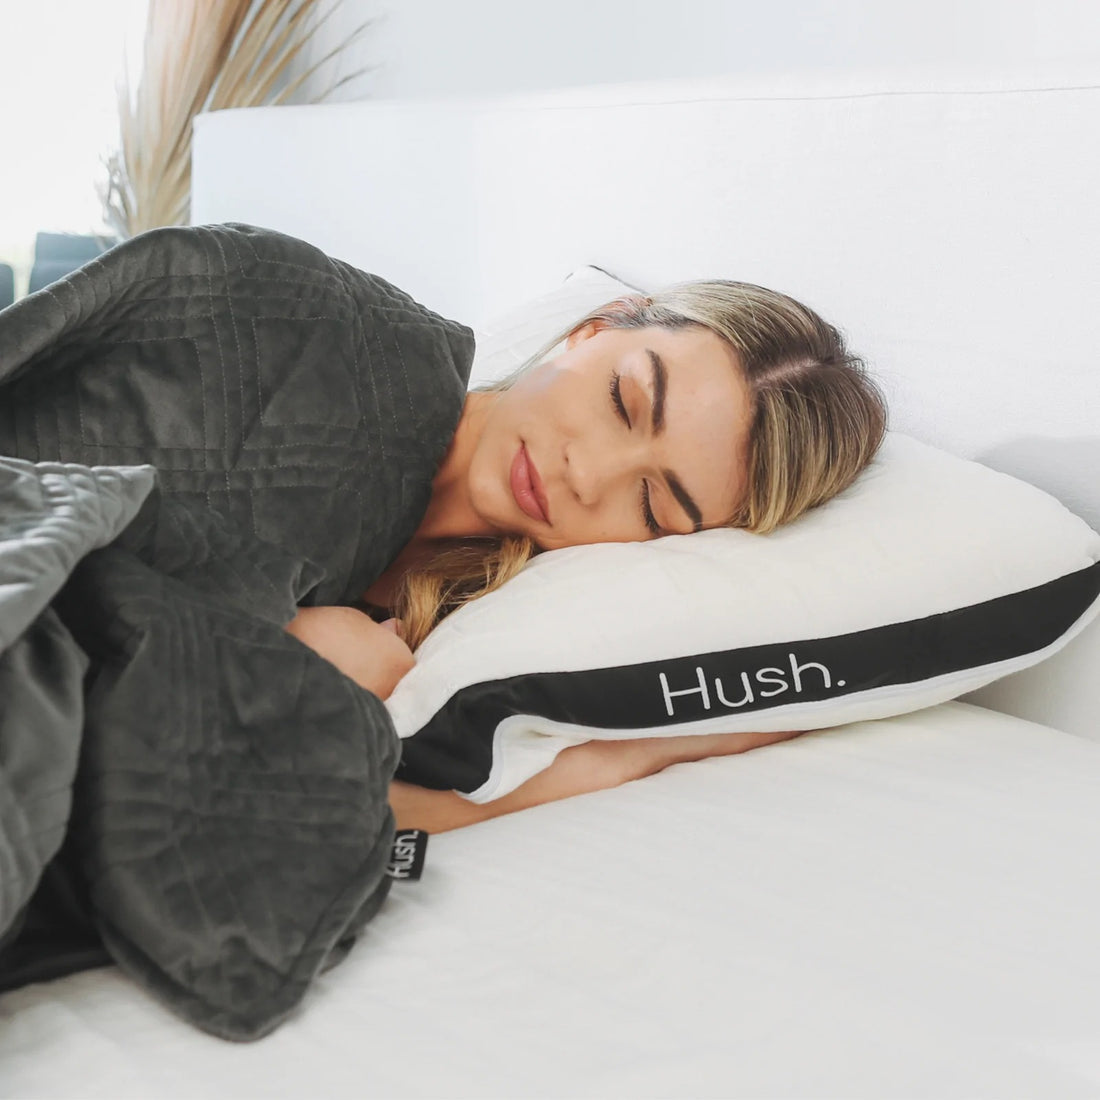 A young woman sleeps on a Hush pillow.